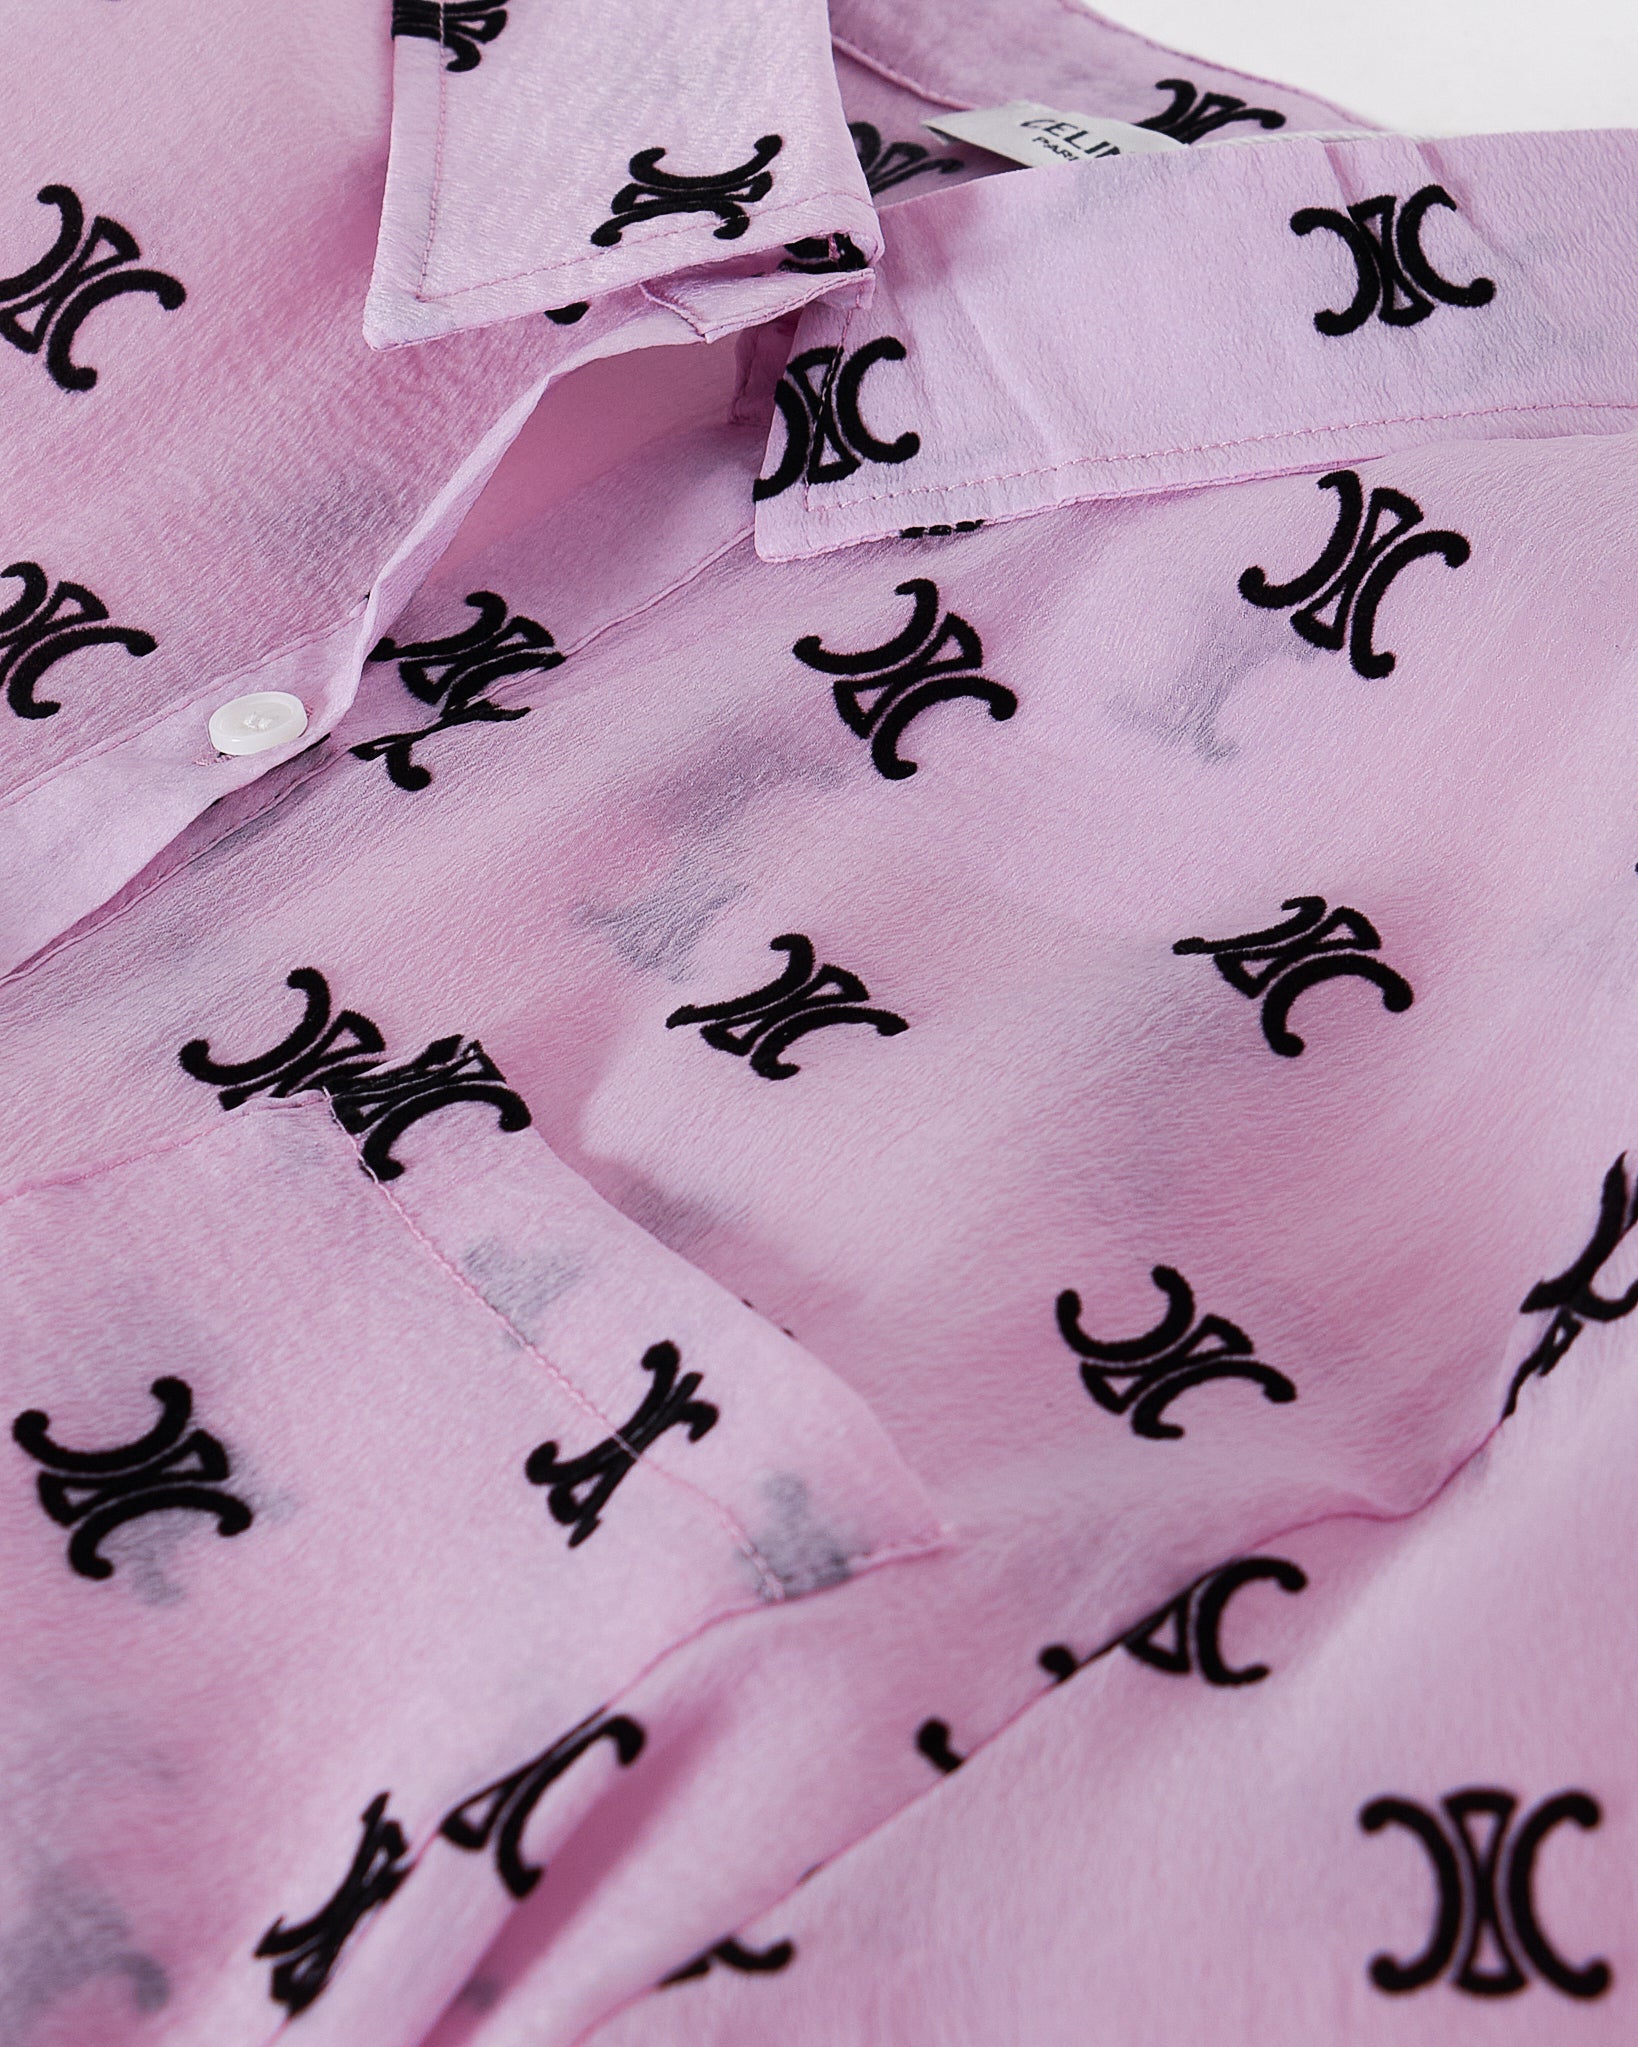 MOI OUTFIT-CC Monogram Lady Pink Set Shirt + Short 2pcs 79.90